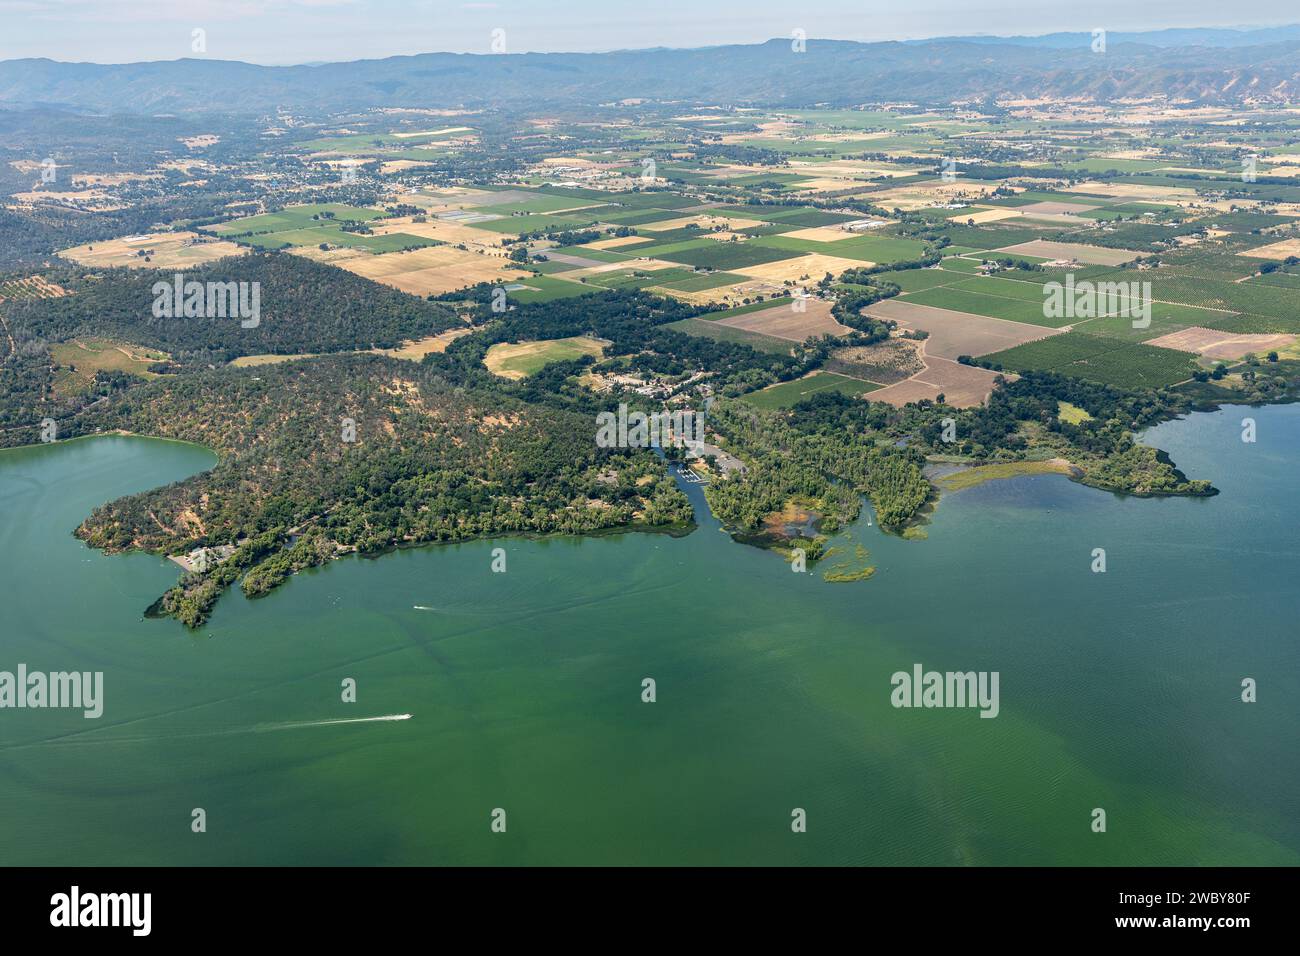 Vista aerea delle acque verdi inquinate del lago Clear e degli effetti ambientali del deflusso agricolo che causa la fioritura delle alghe Foto Stock